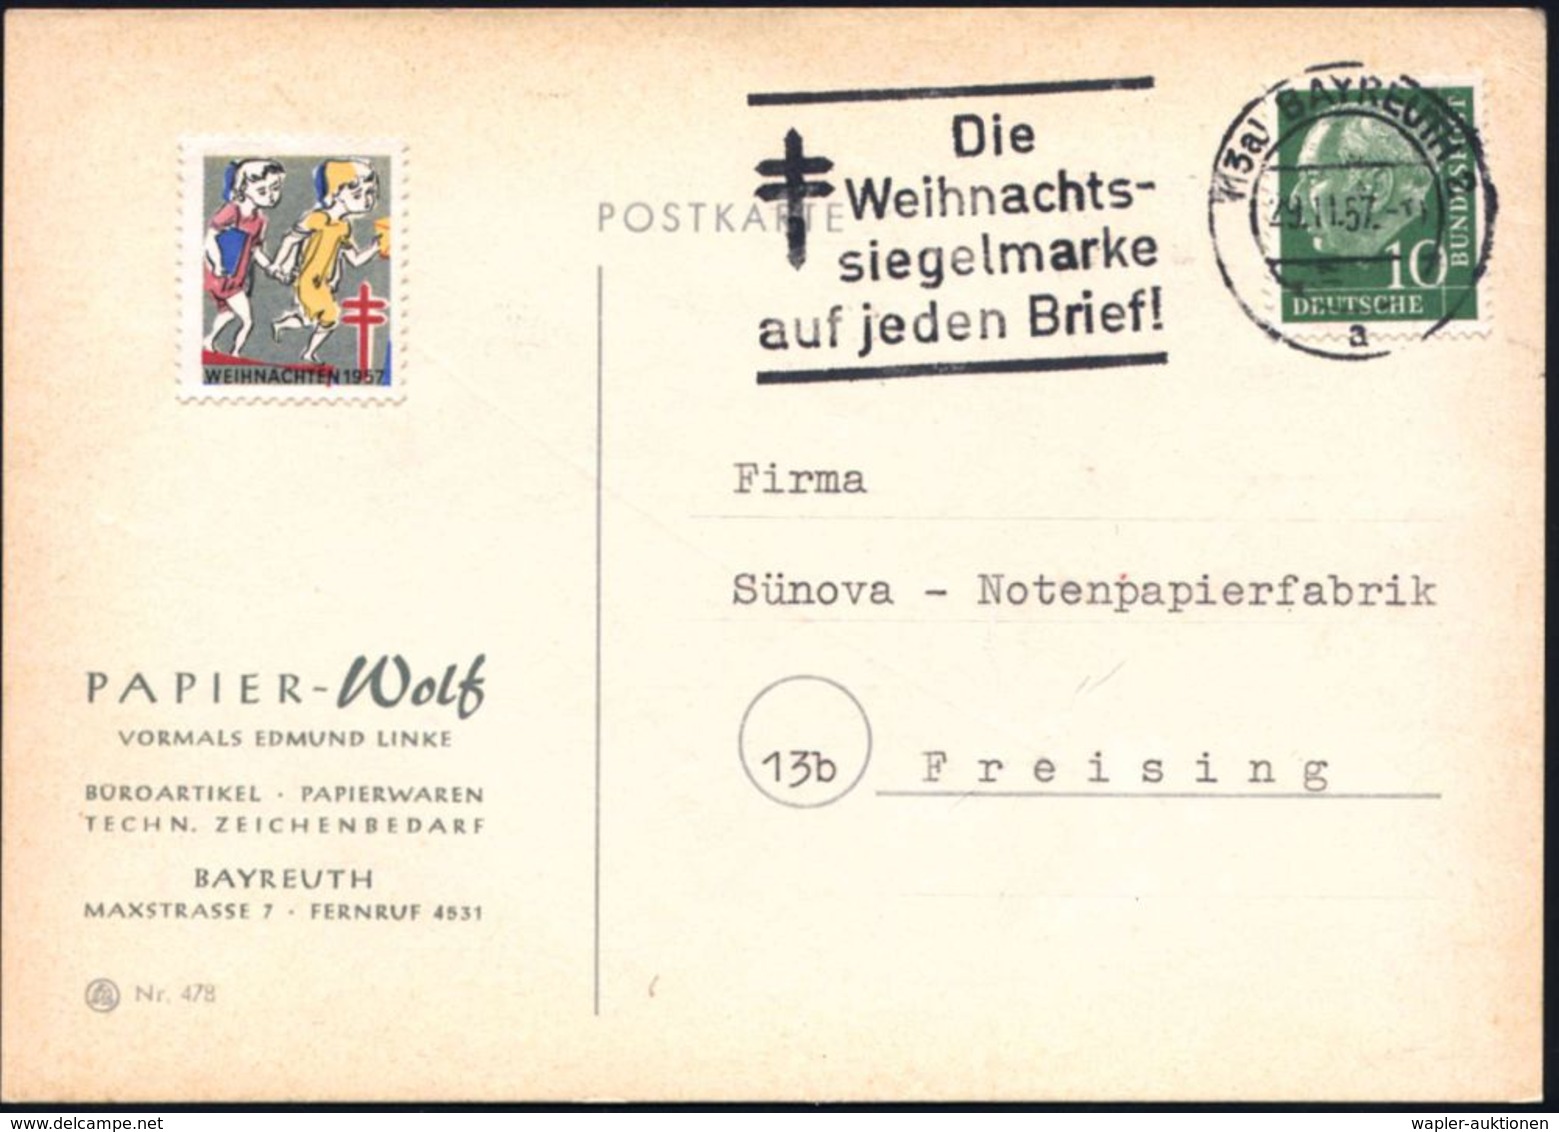 TUBERKULOSE / TBC-VORSORGE : (13a) BAYREUTH 2/ A/ Die/ Weihnachts-/ Siegelmarke/ Auf Jeden Brief! 1957 (29.11.) MWSt (=  - Krankheiten